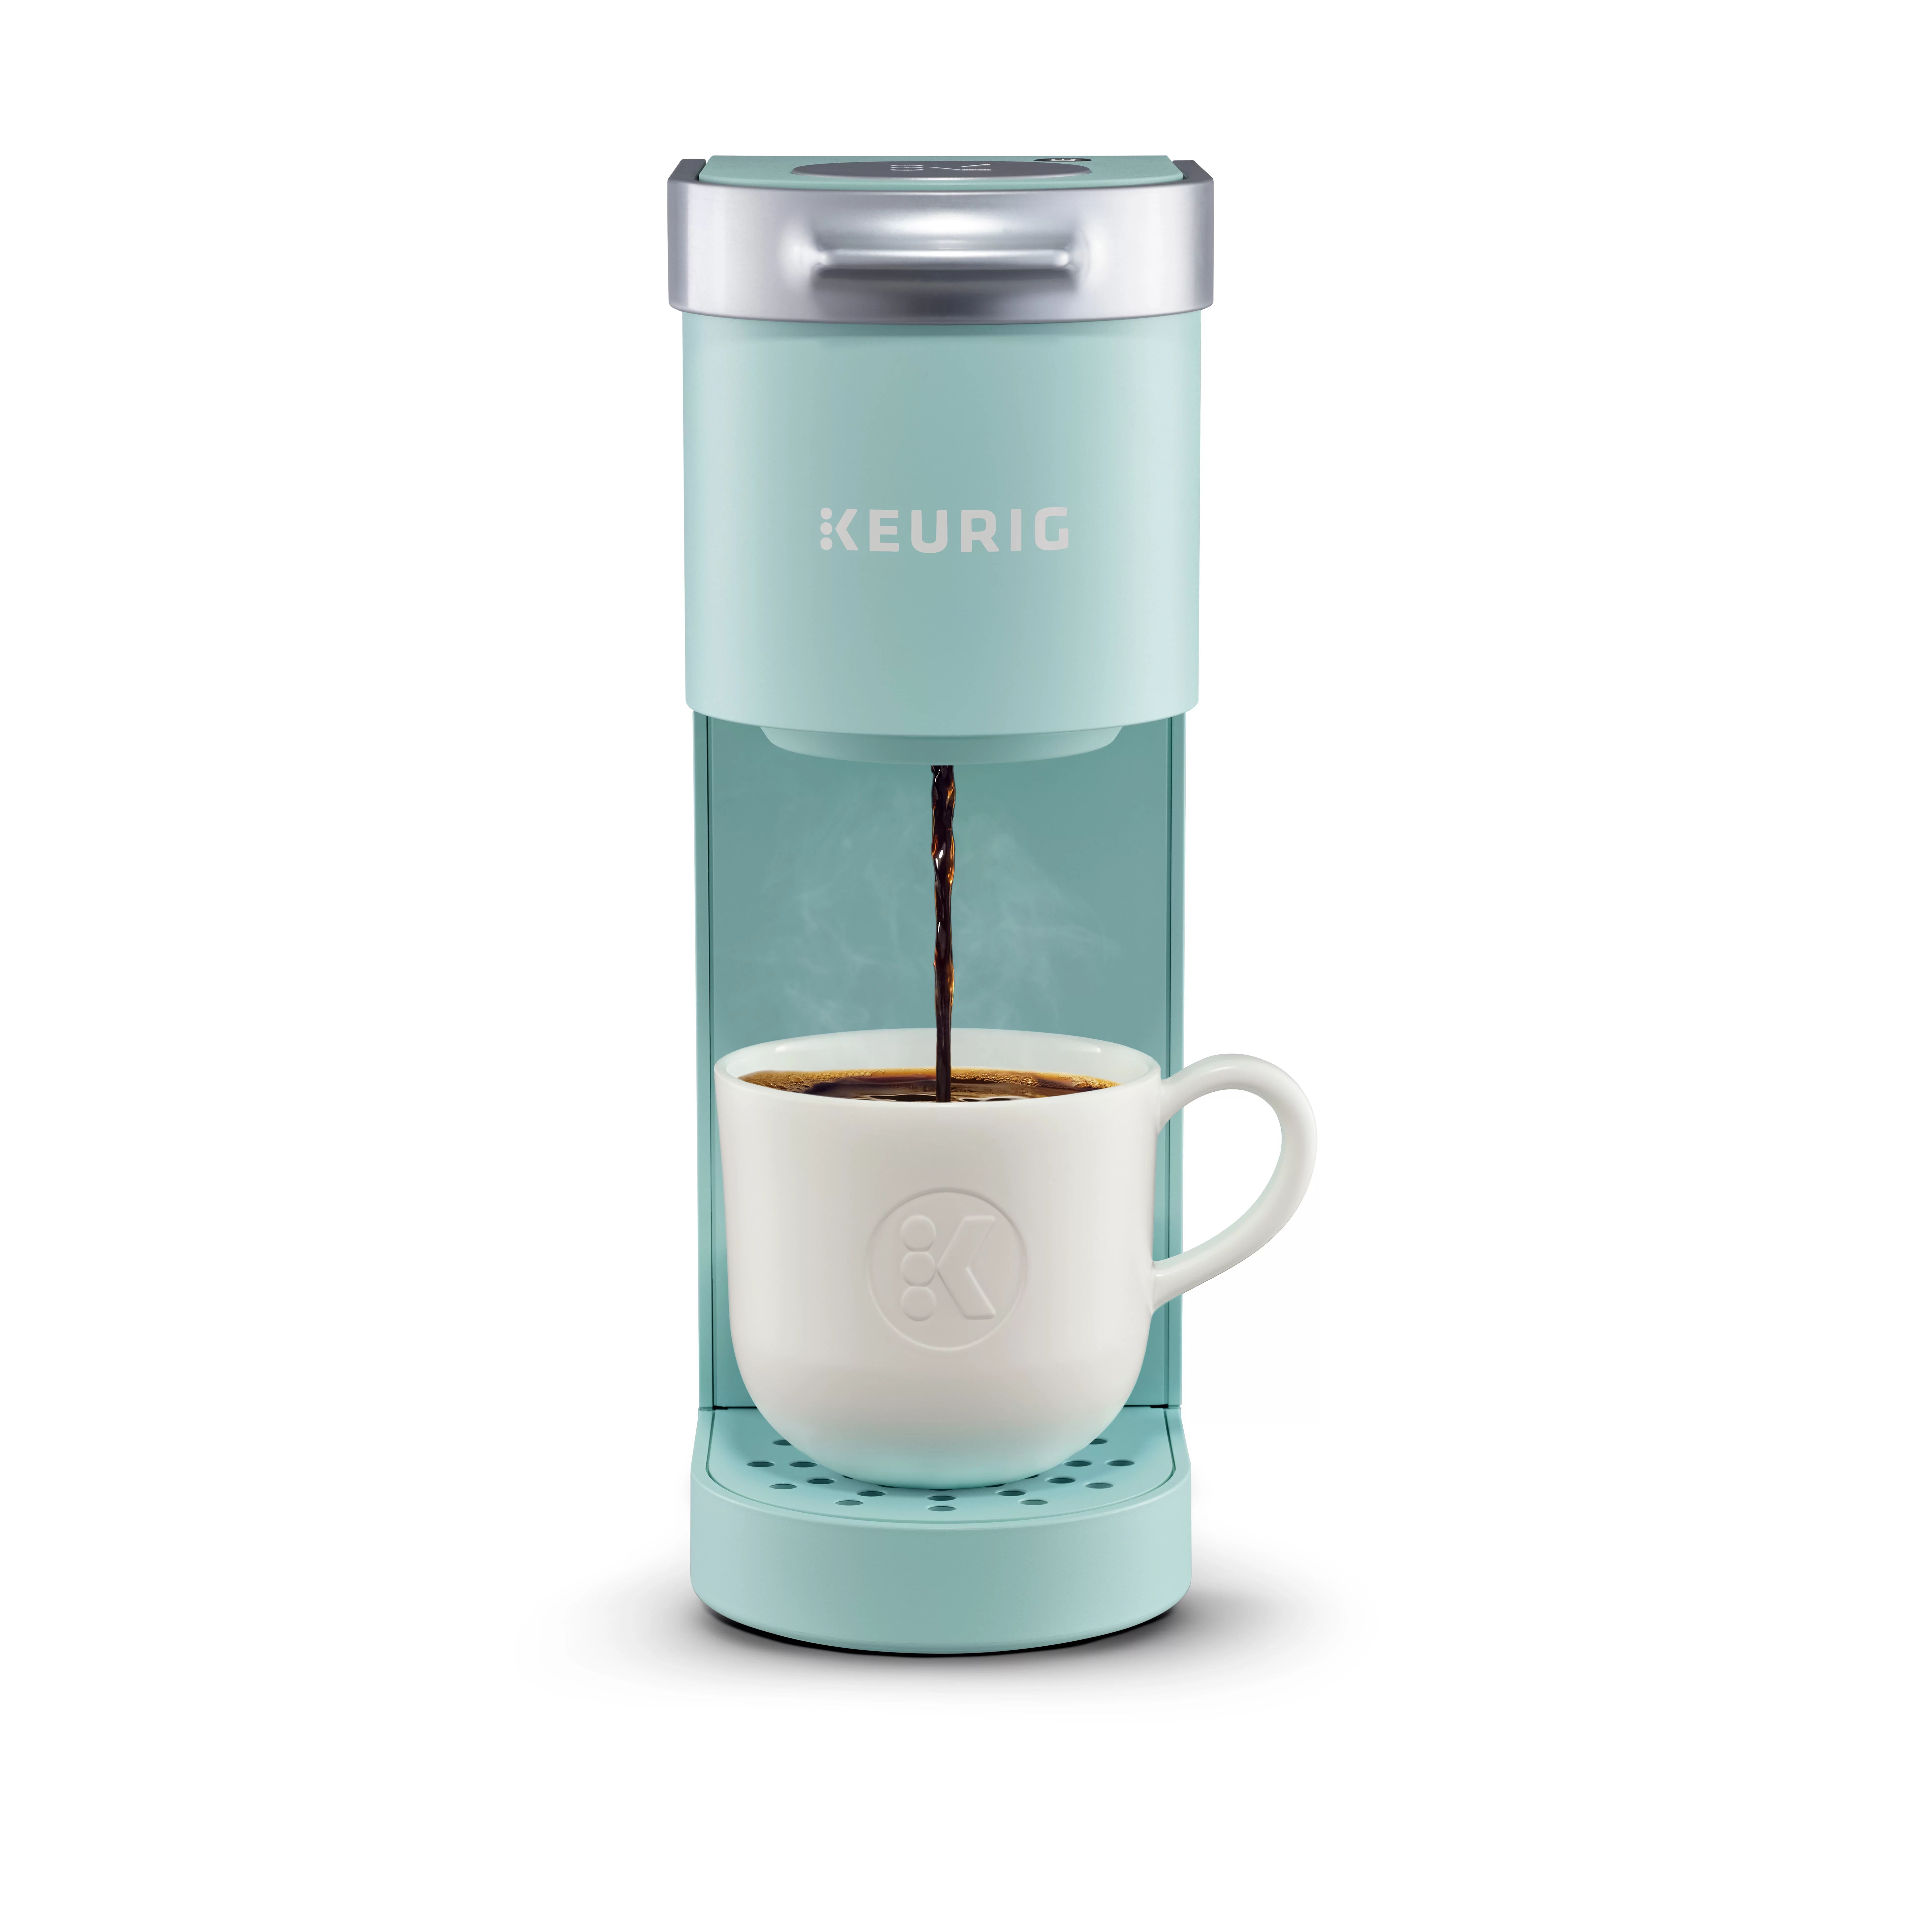 Keurig K-Mini Single Serve Coffee Maker, Oasis - Walmart.com | Walmart (US)